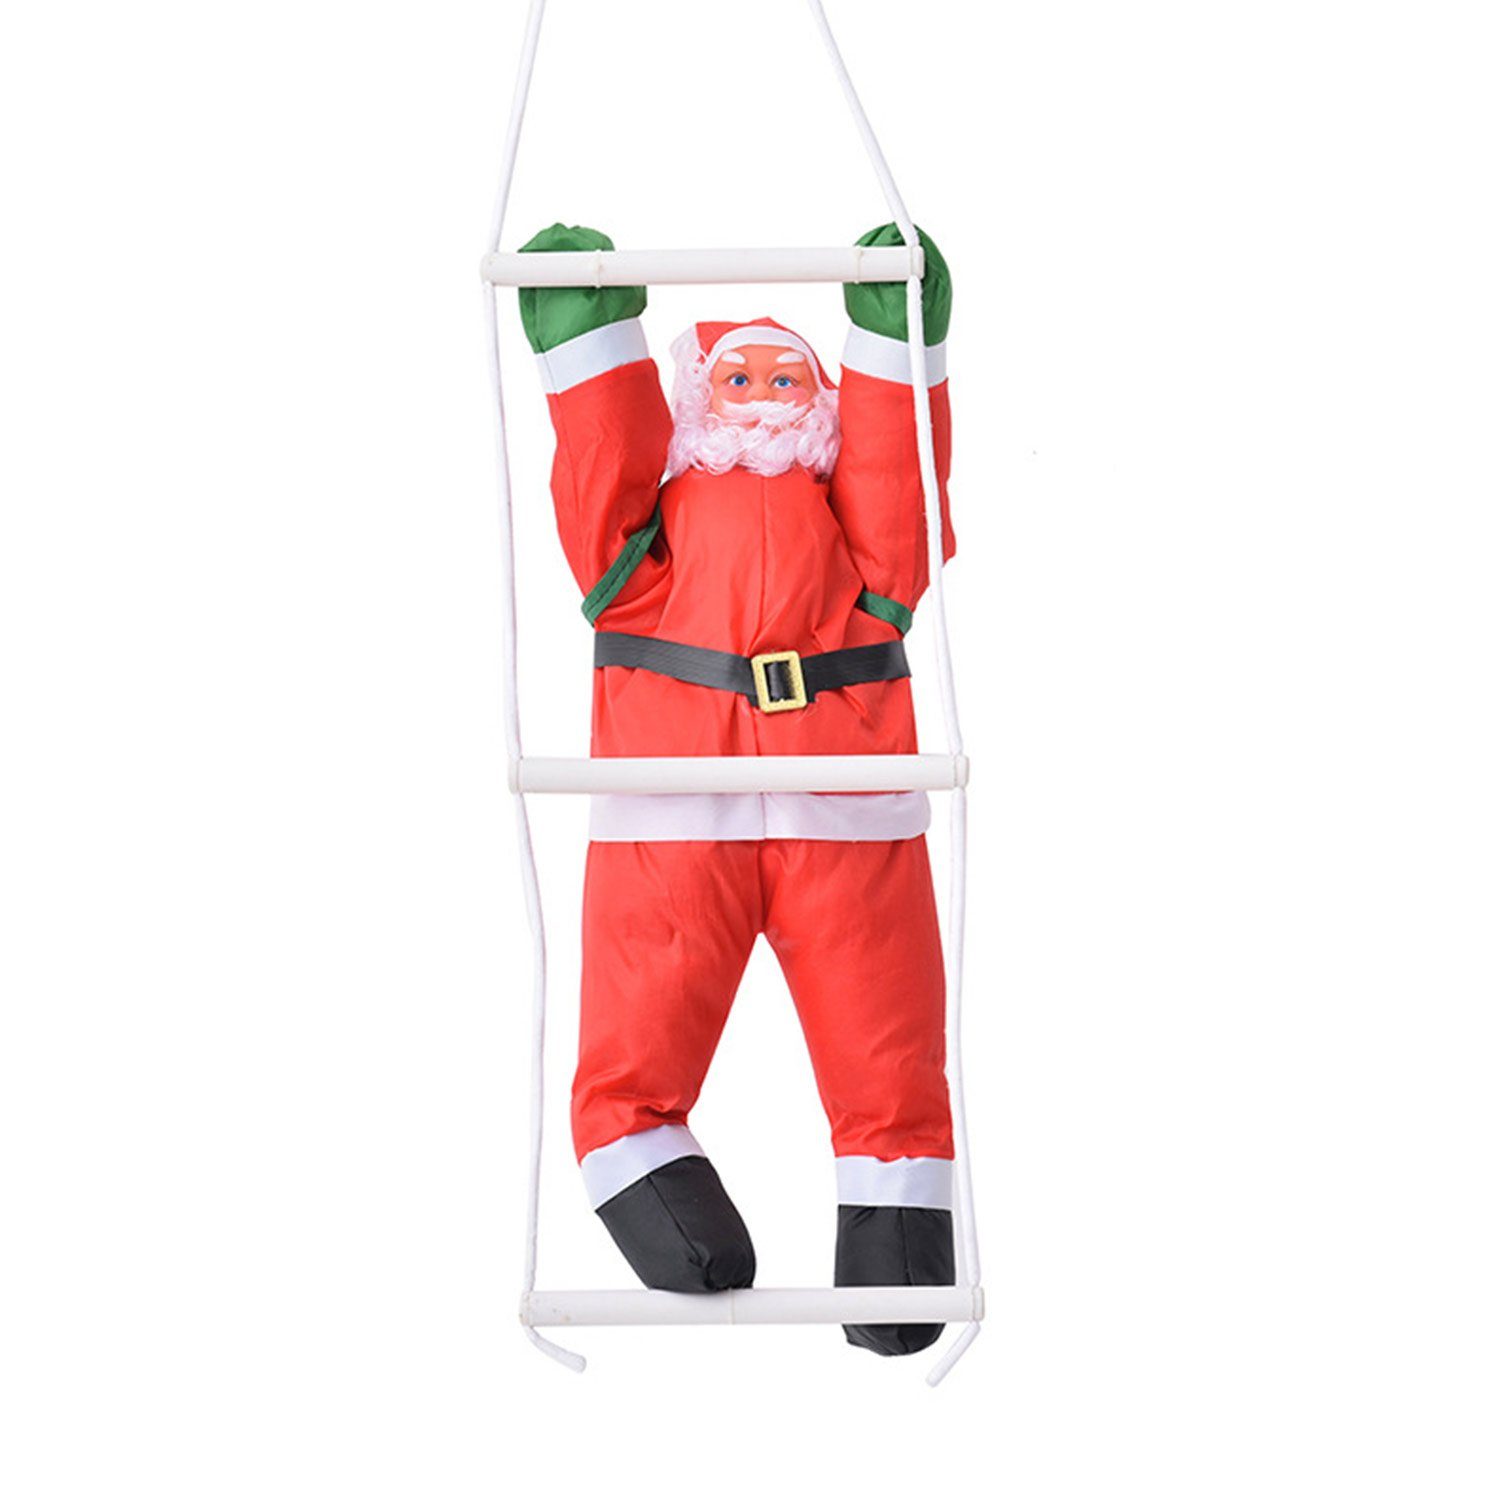 rot1 des Dekofiguren Weihnachtsdekoration 60cm, MAGICSHE Weihnachtsmann Kletterseil Weihnachtsmannes Höhe